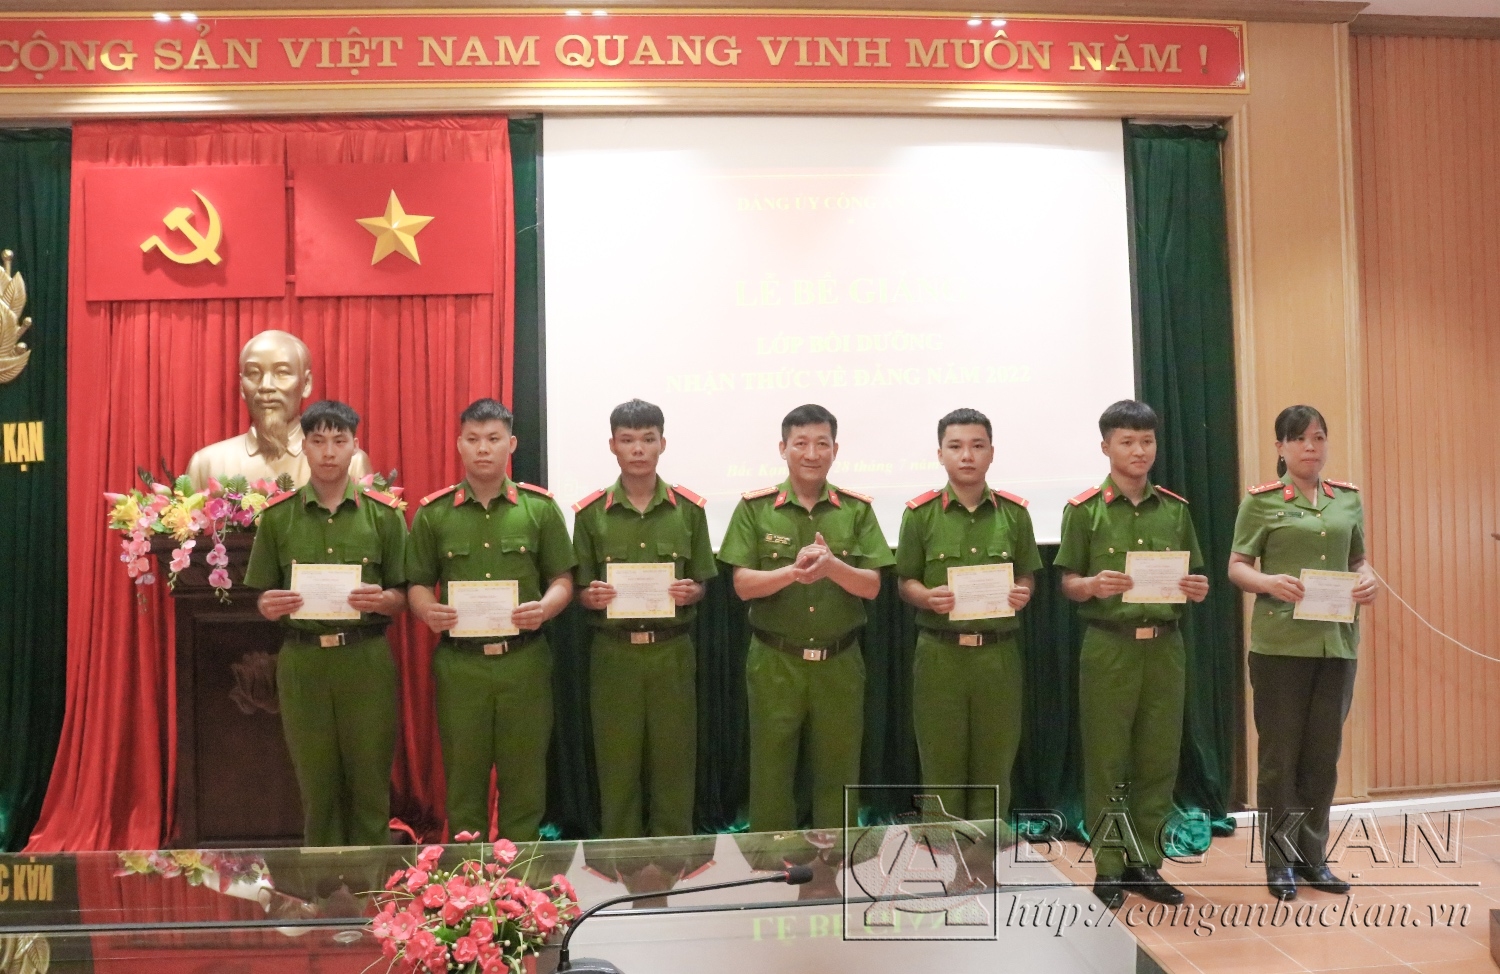 Đại tá Hà Trọng Trung – Phó Bí thư Đảng ủy, Phó Giám đốc Công an tỉnh trao chứng nhận cho học viên hoàn thành lớp bồi dưỡng.